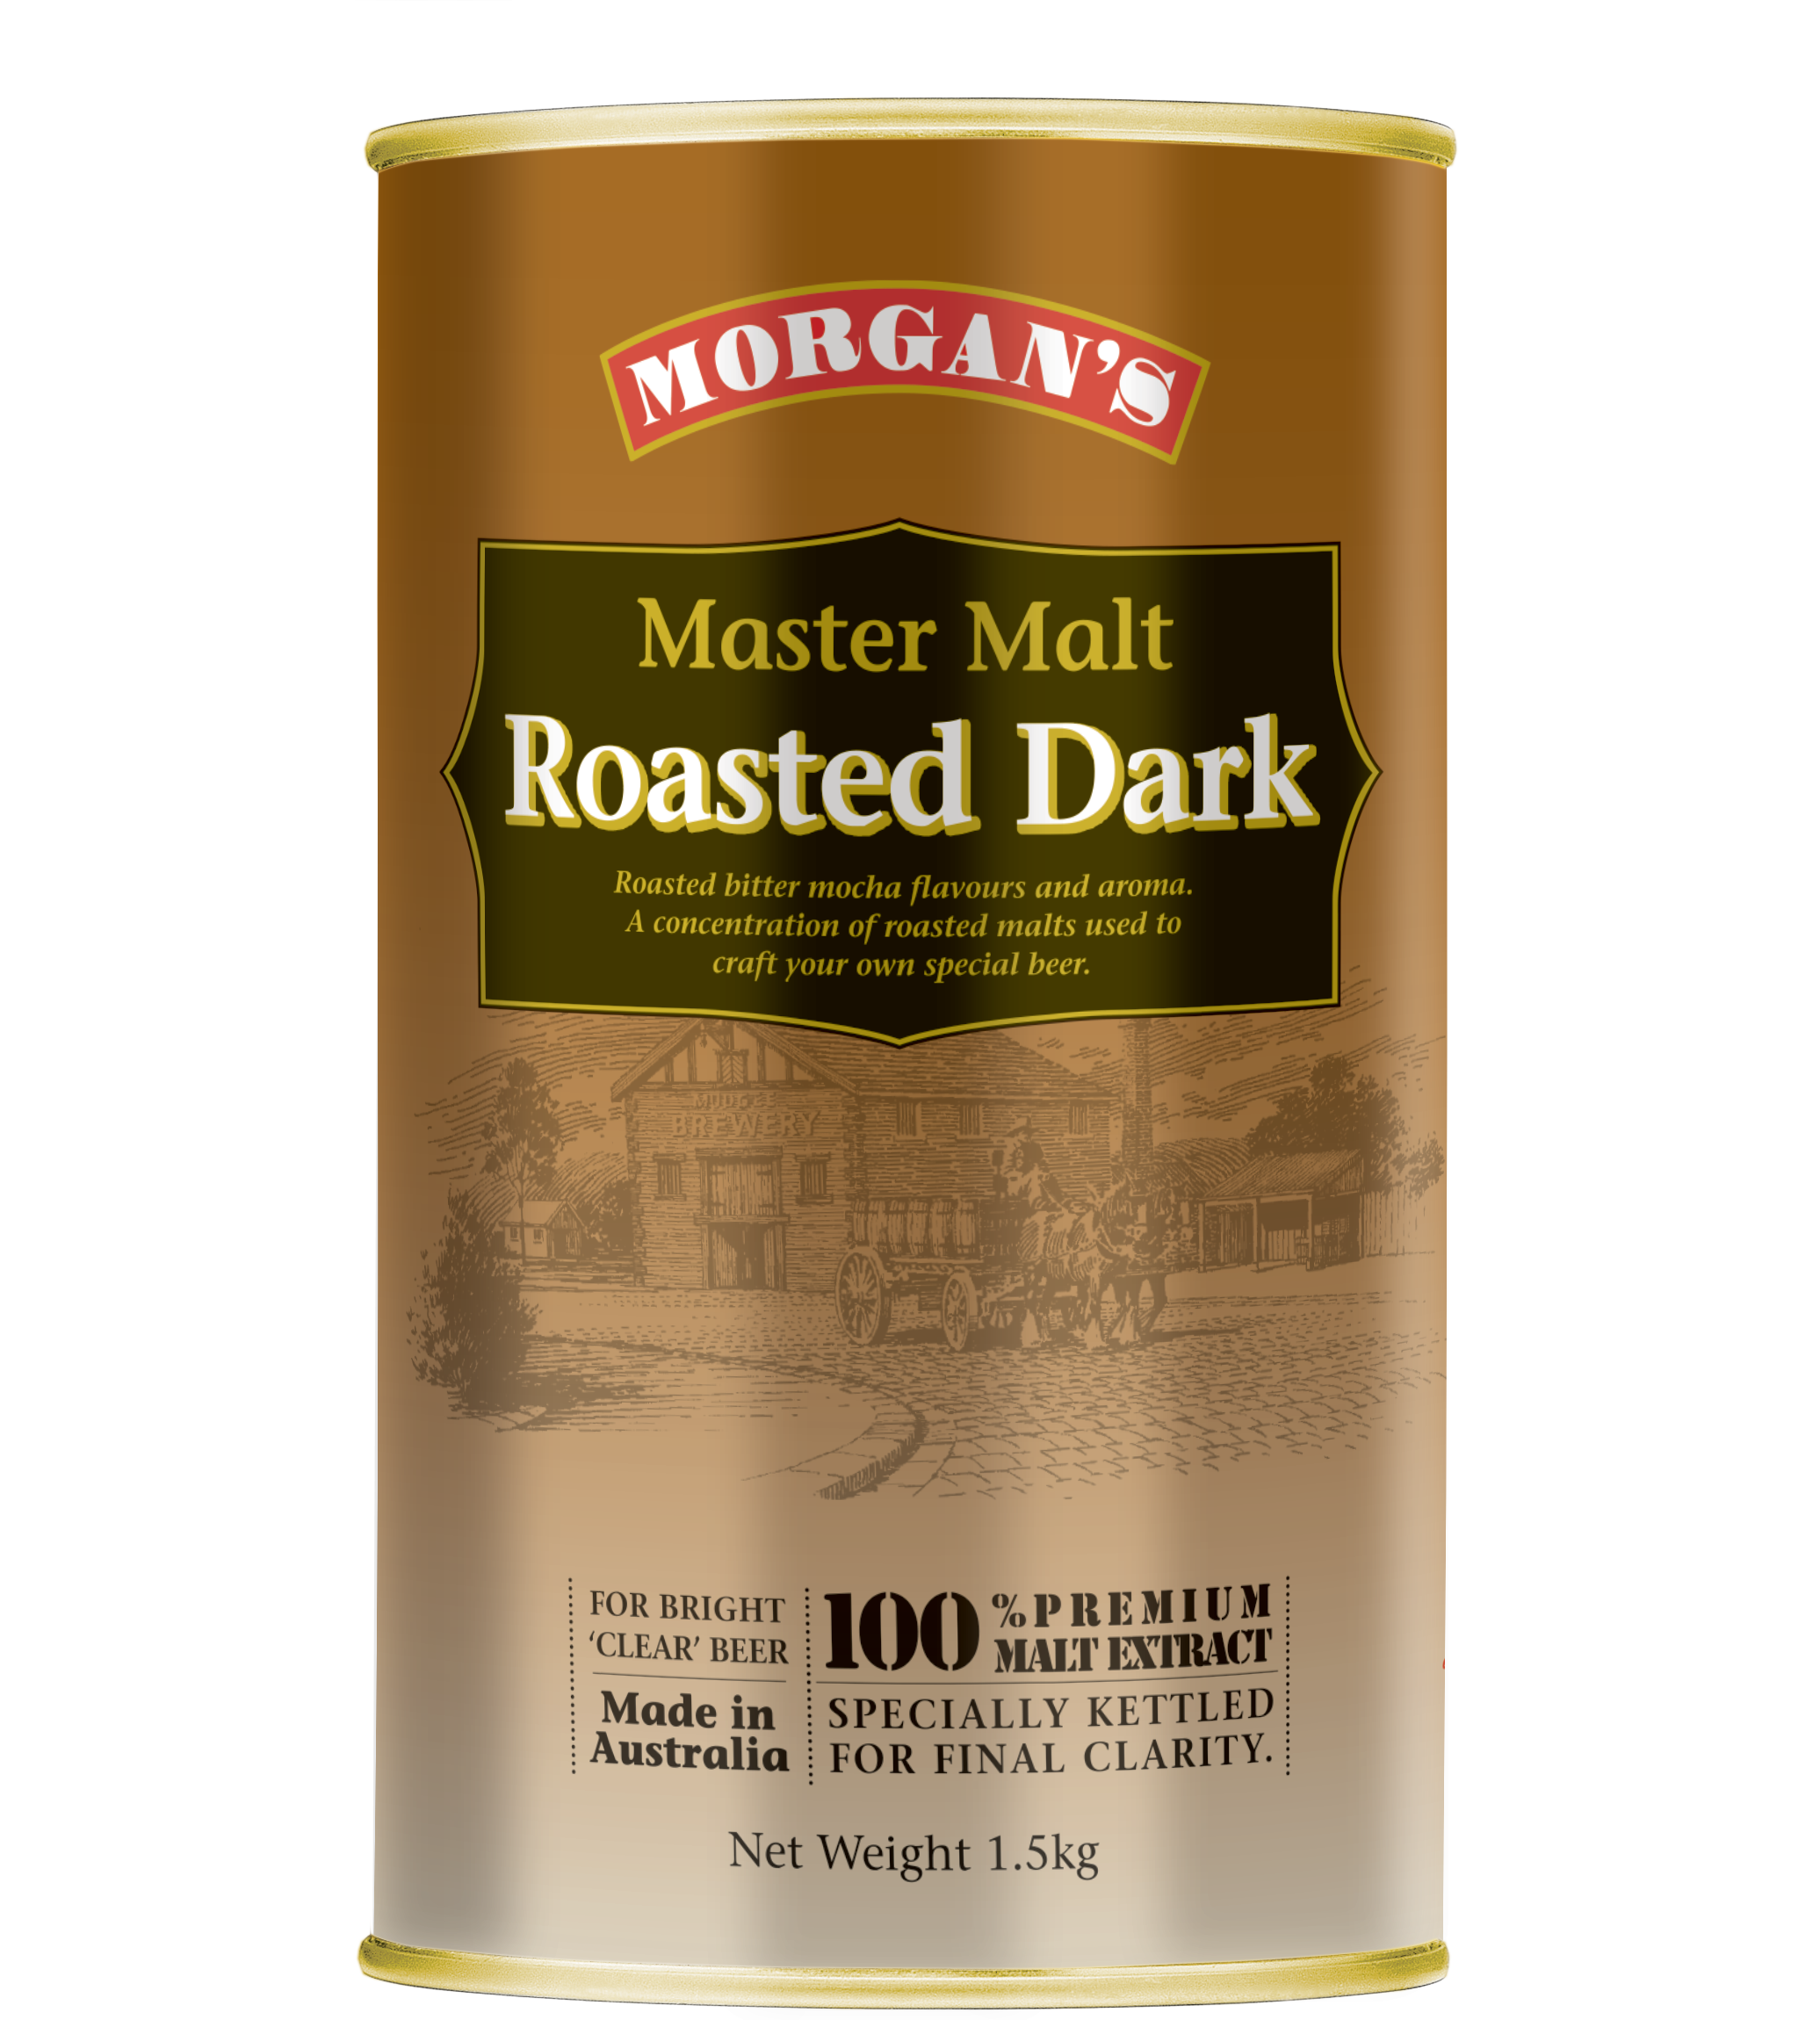 Morgan's Master Malt Roasted Dark